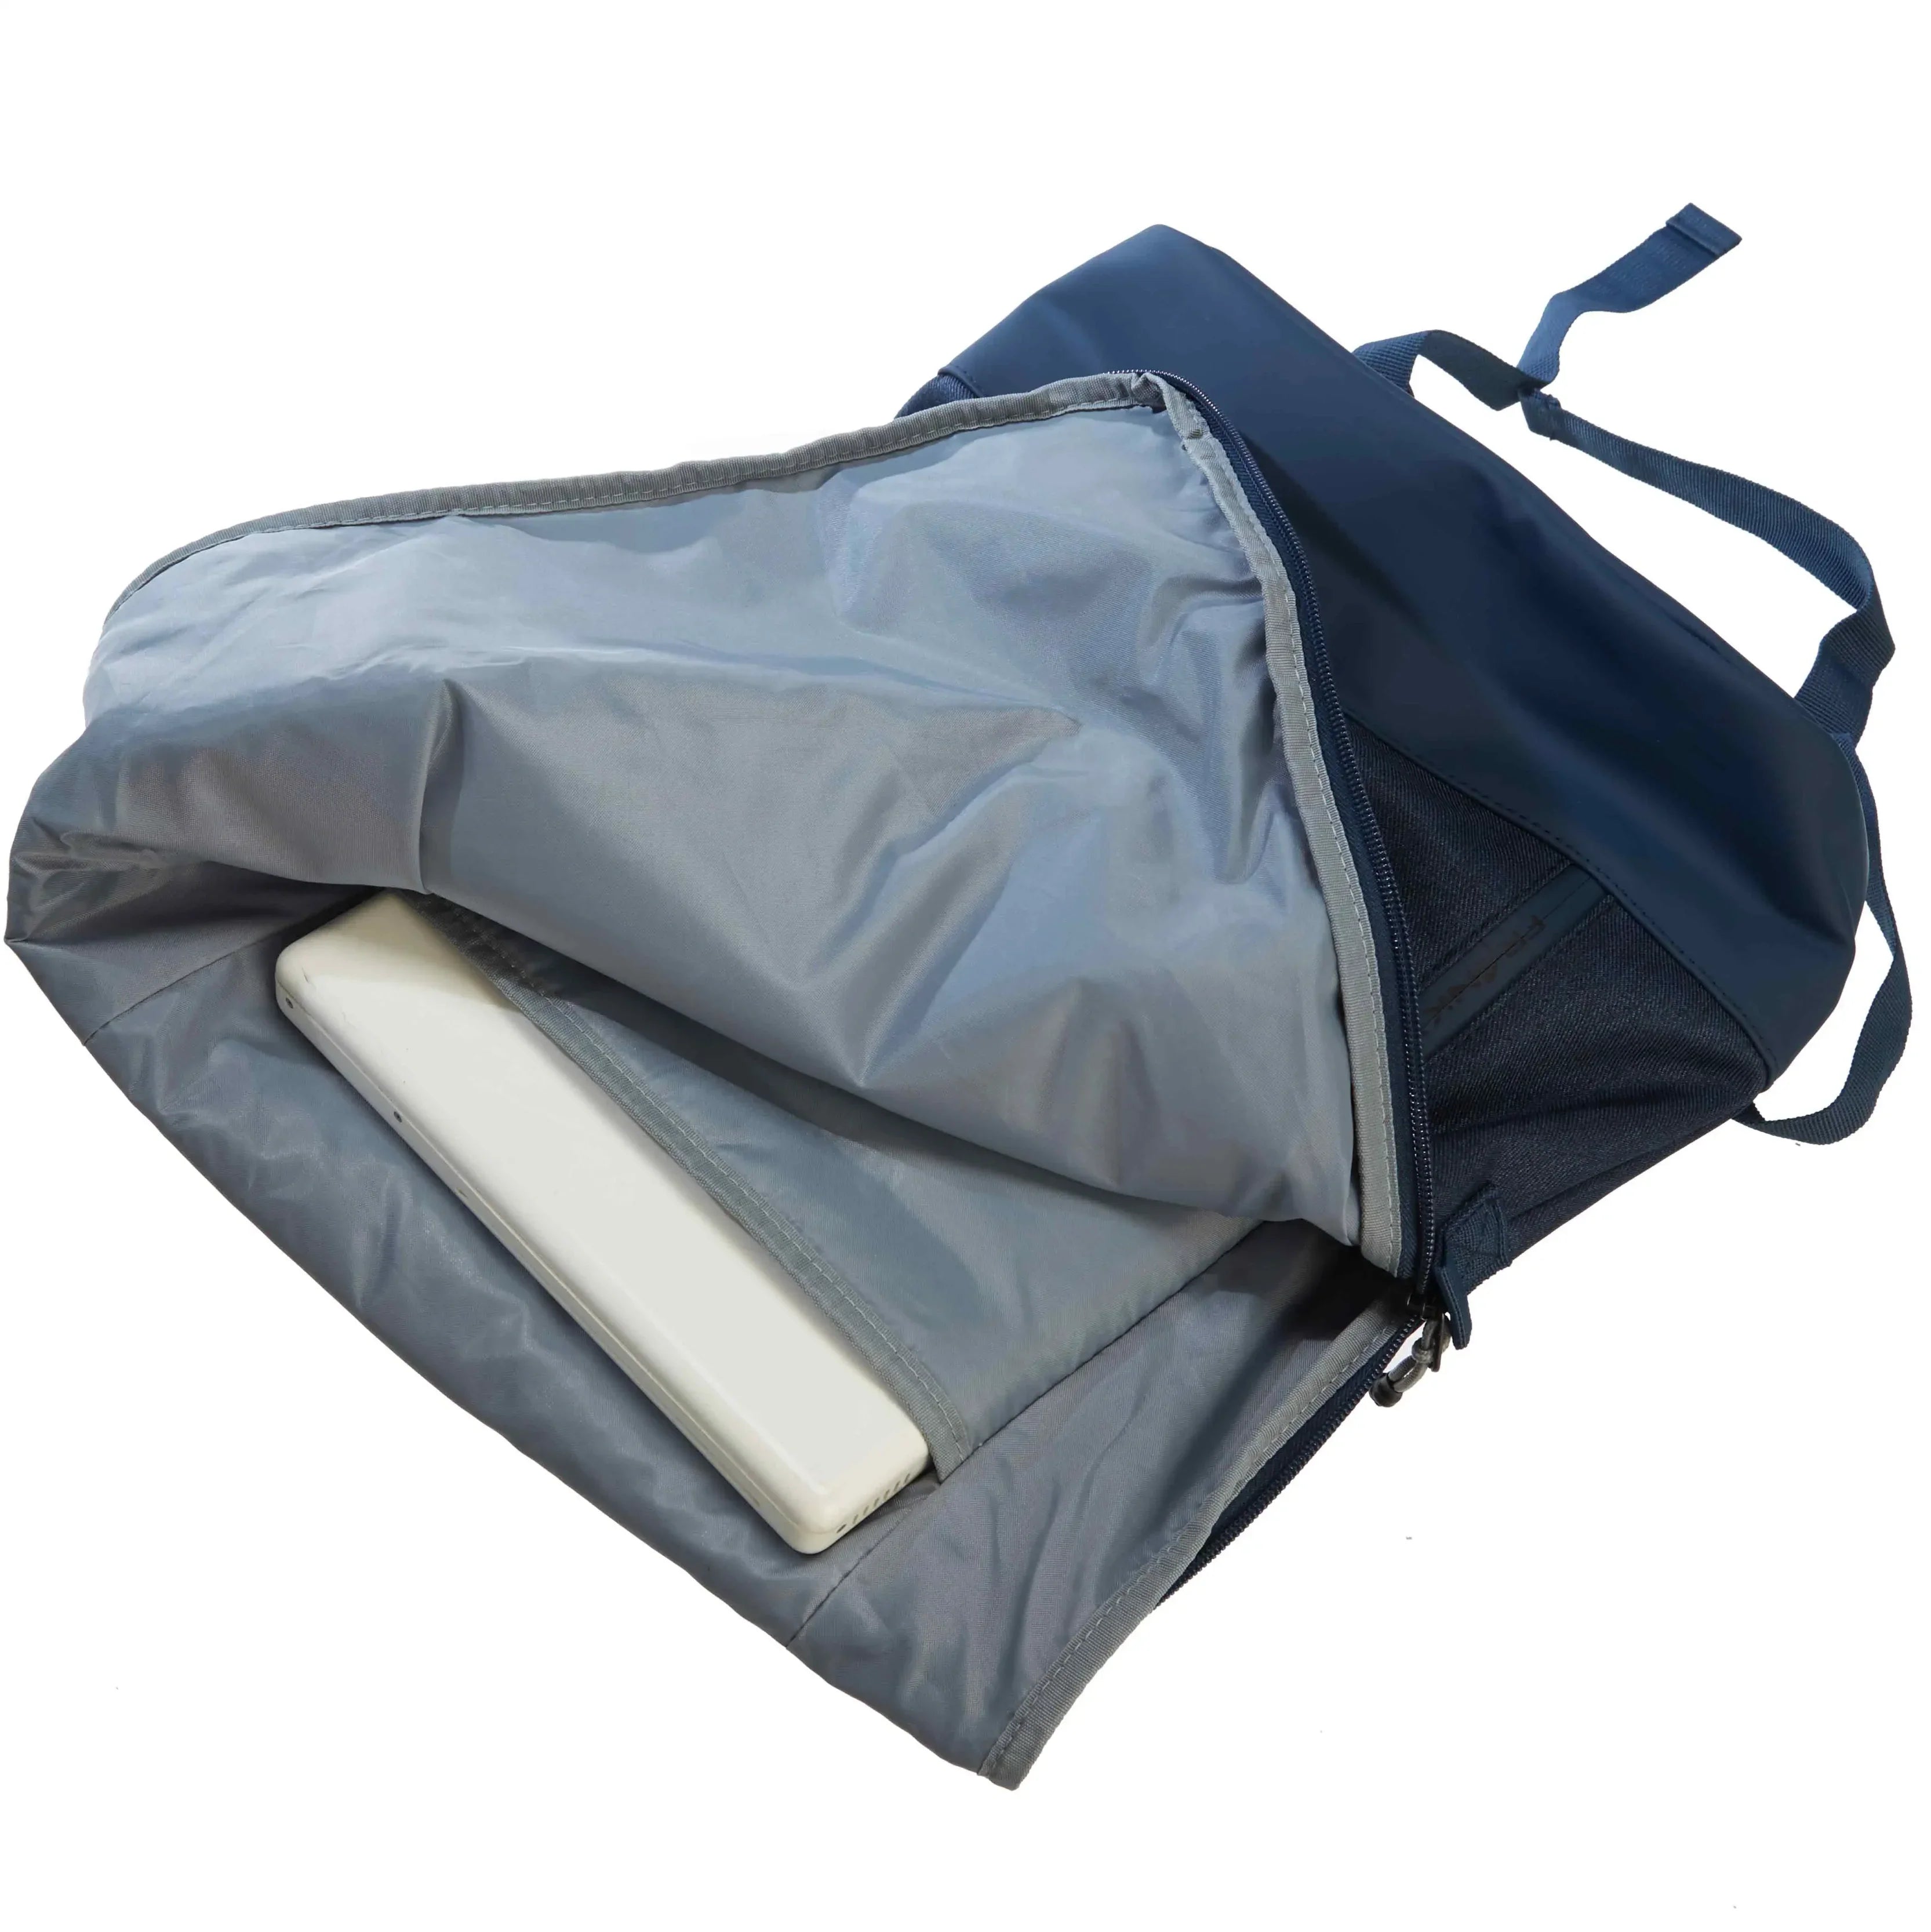 koffer-direkt.de Roll-top backpack 41 cm - black